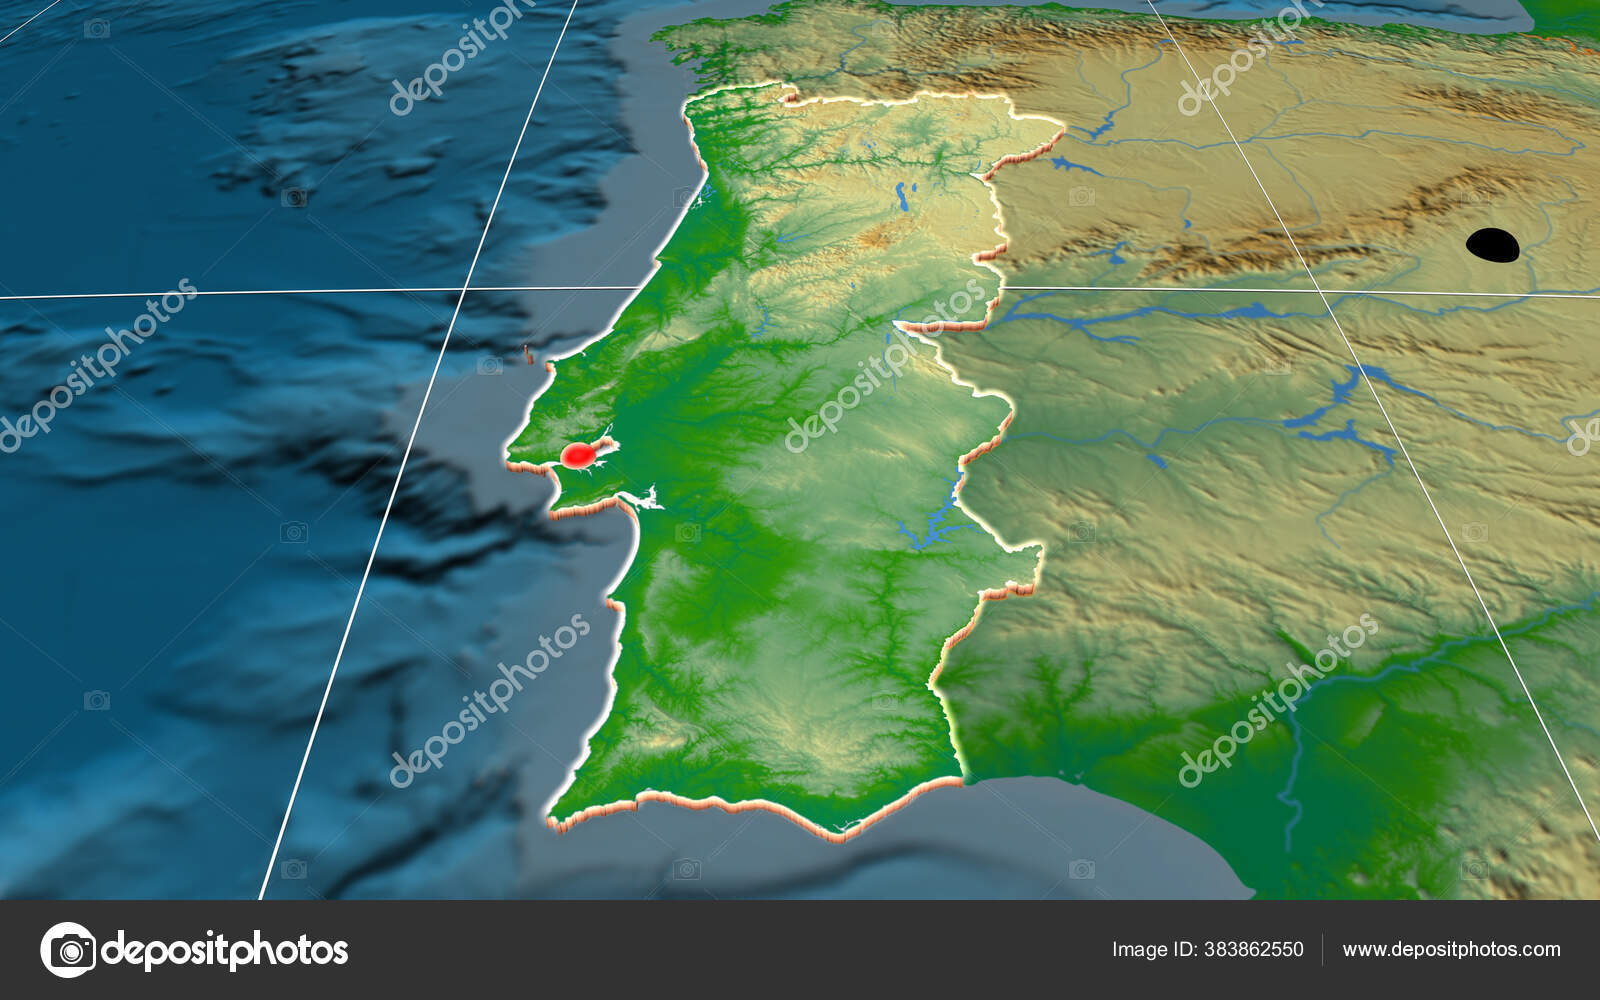 Portugal mapa livre, mapa em branco livre, mapa livre do esboço, mapa  básico livre fronteiras, hidrografia, principais cidades, estradas, nomes,  branco